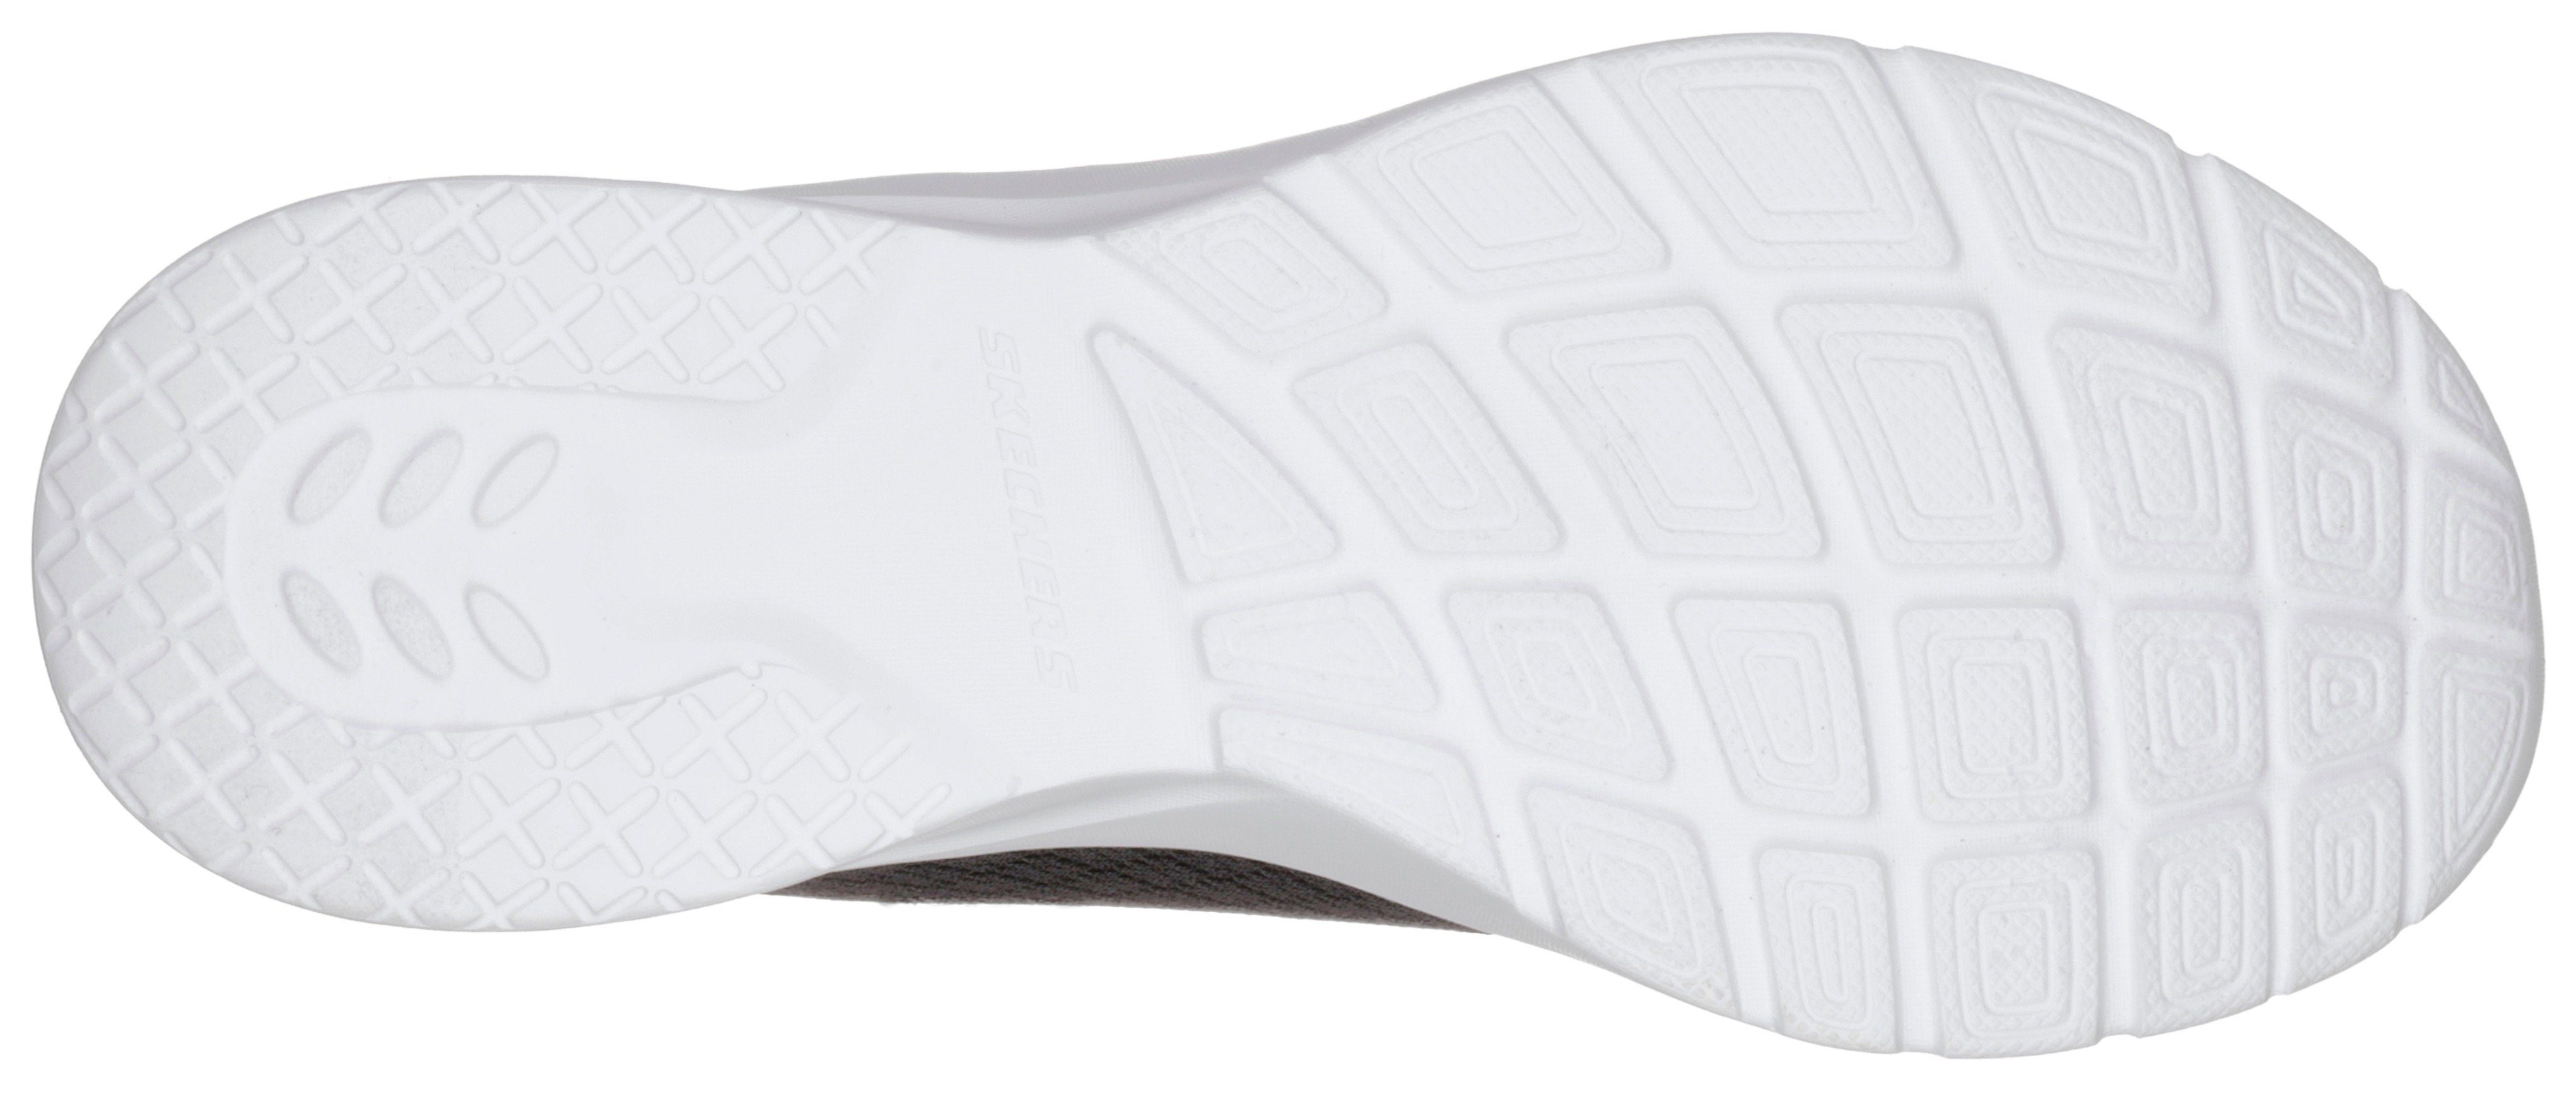 to - Skechers 2.0 Sneaker Foam schwarz-weiß Eye Memory Dynamight mit Eye